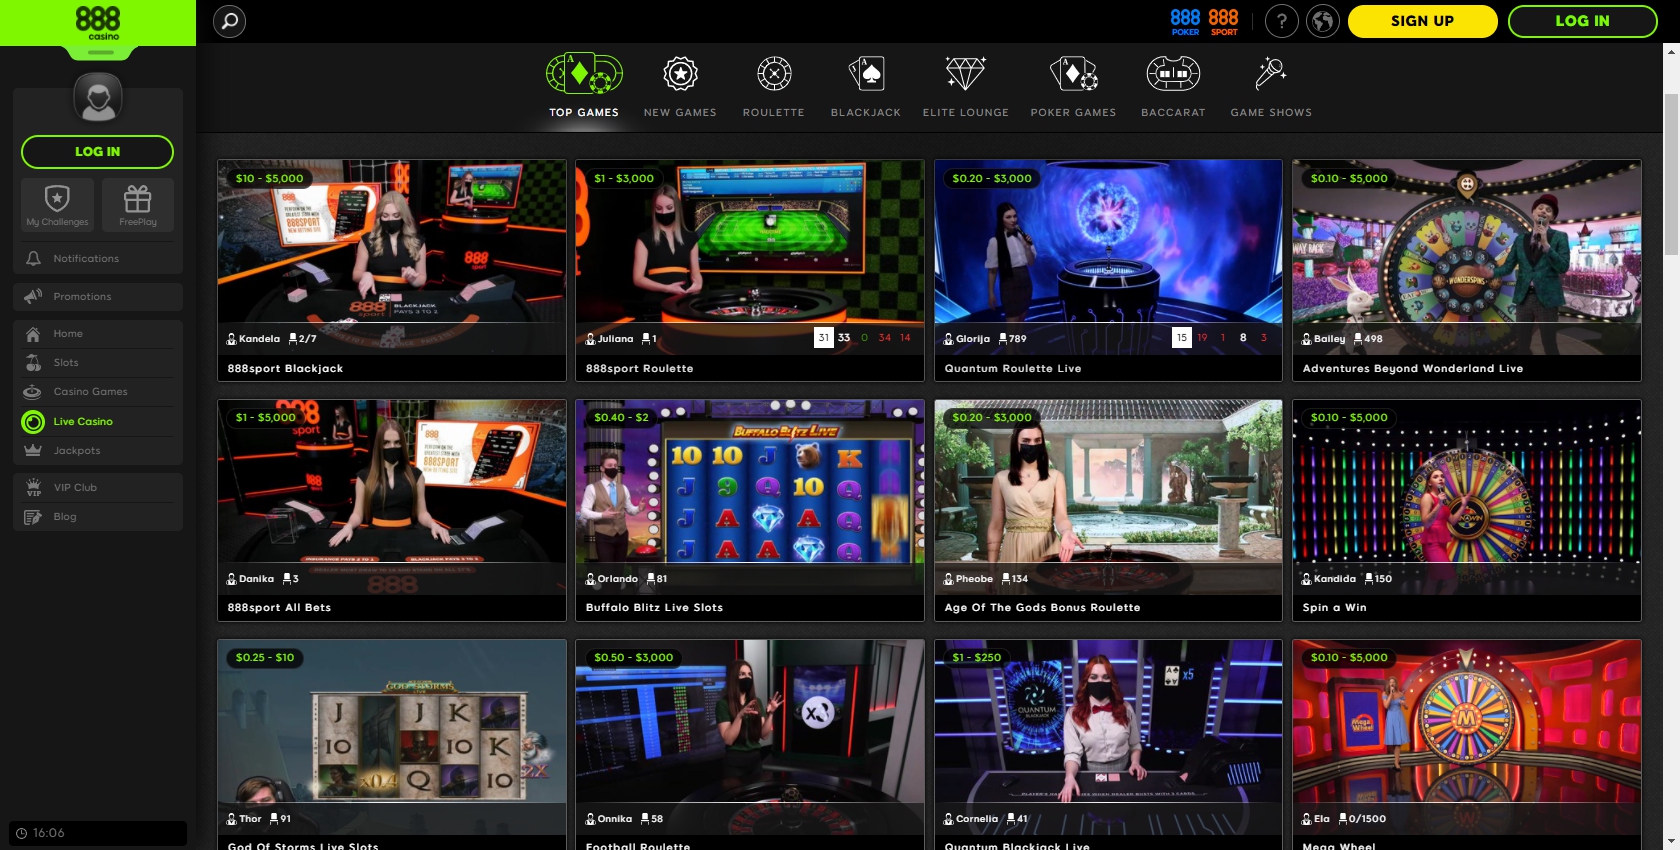 888.com Casino Live Dealer Games